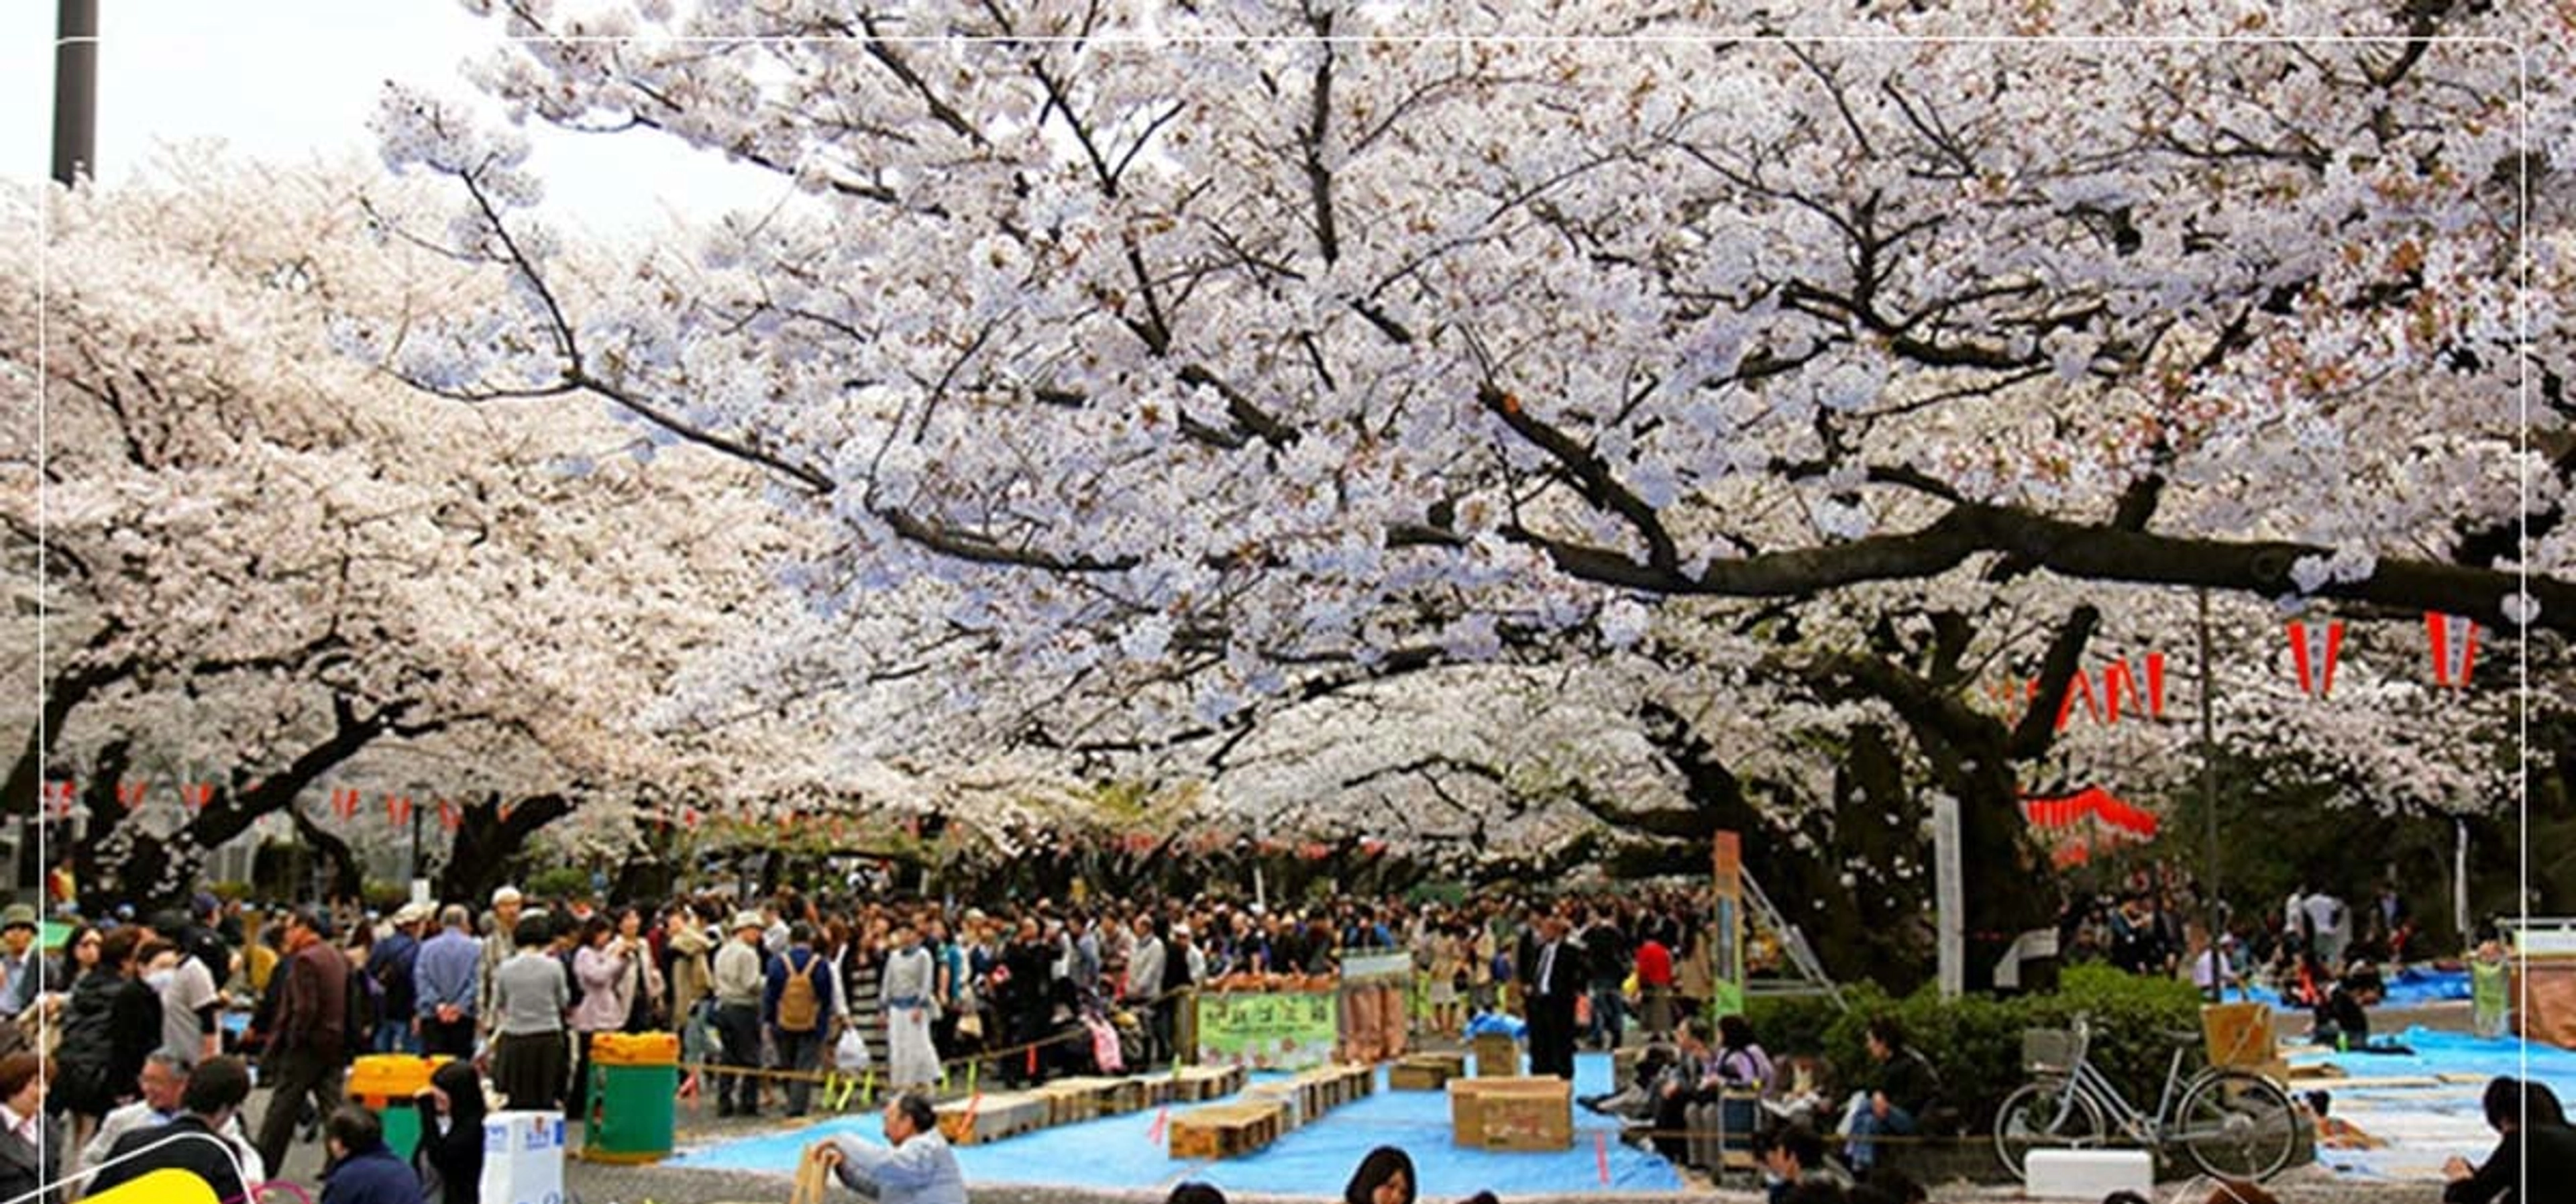 Du lịch Nhật Bản mùa hoa Anh Đào từ Hồ Chí Minh